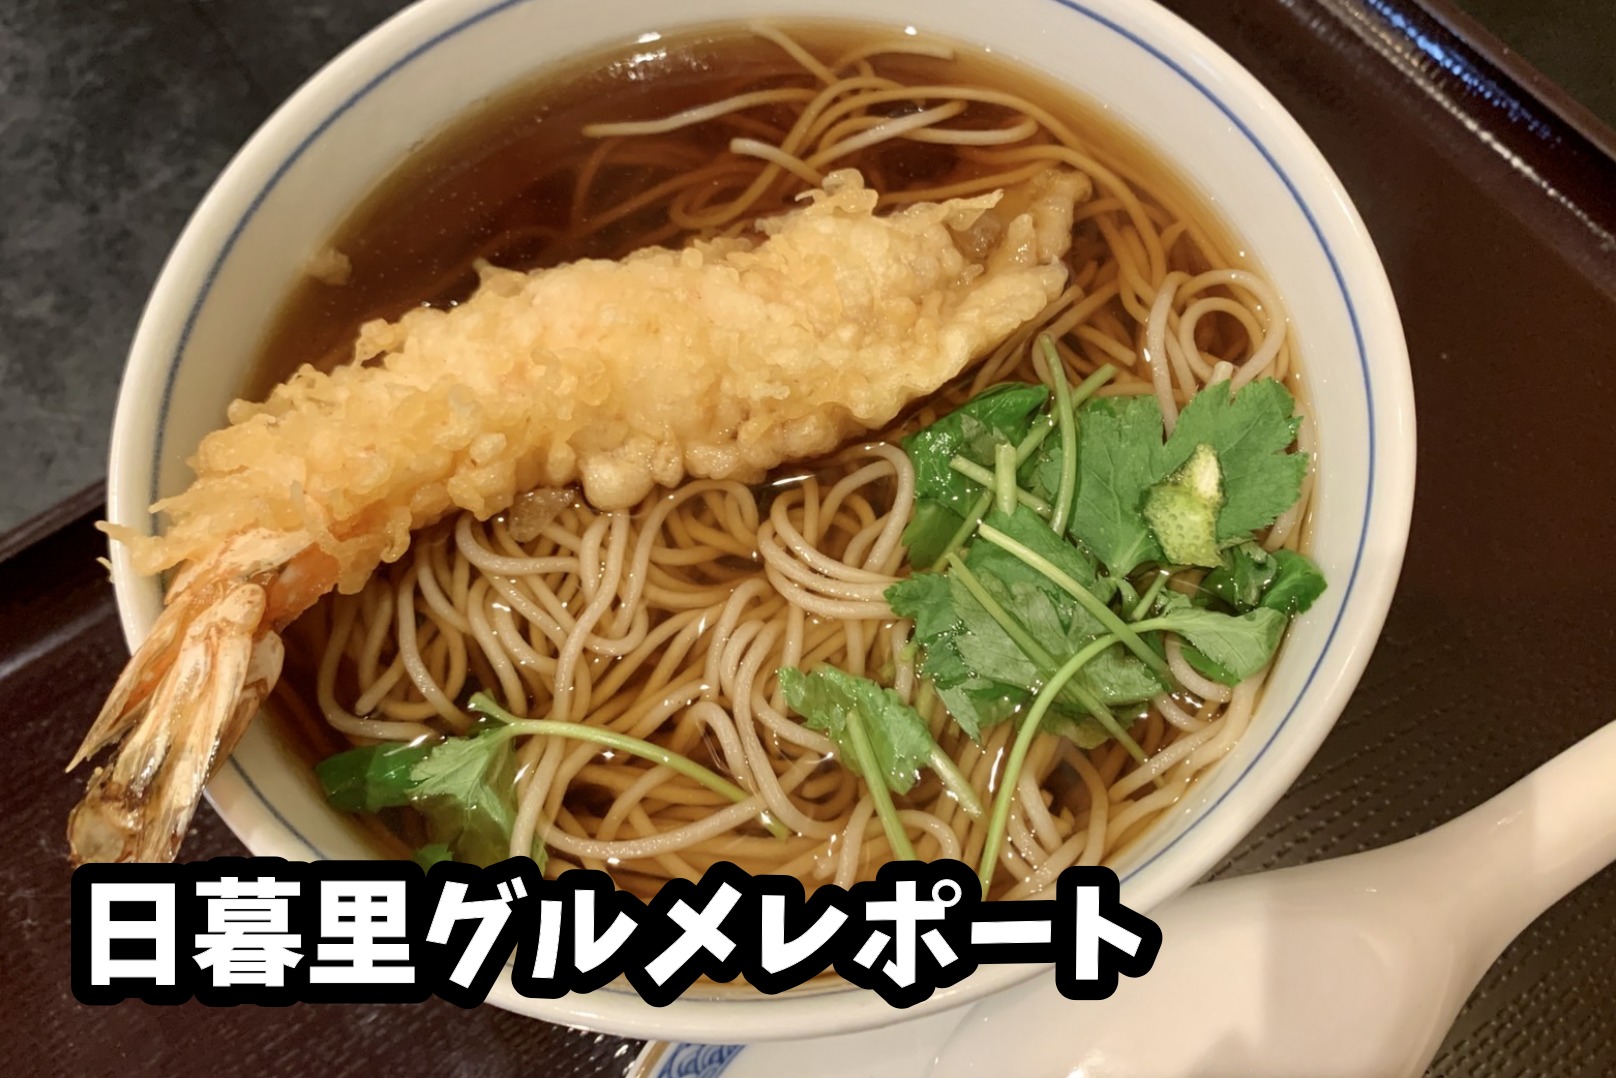 【日暮里グルメレポート】老舗蕎麦屋「川むら」で天ぷらそばを食べる